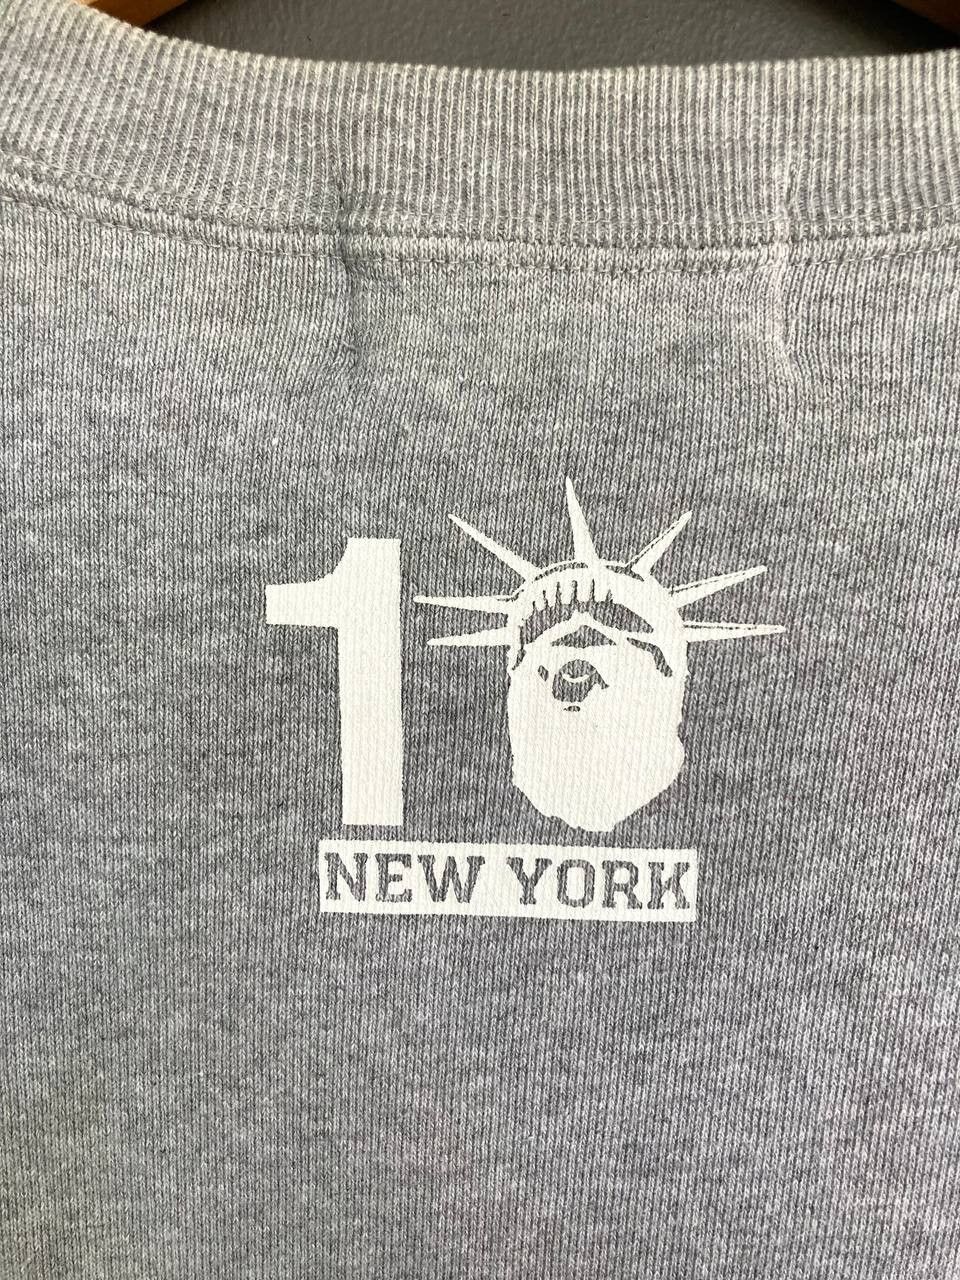 Bape NYC Store 10th Anniv Sweatshirt - 6